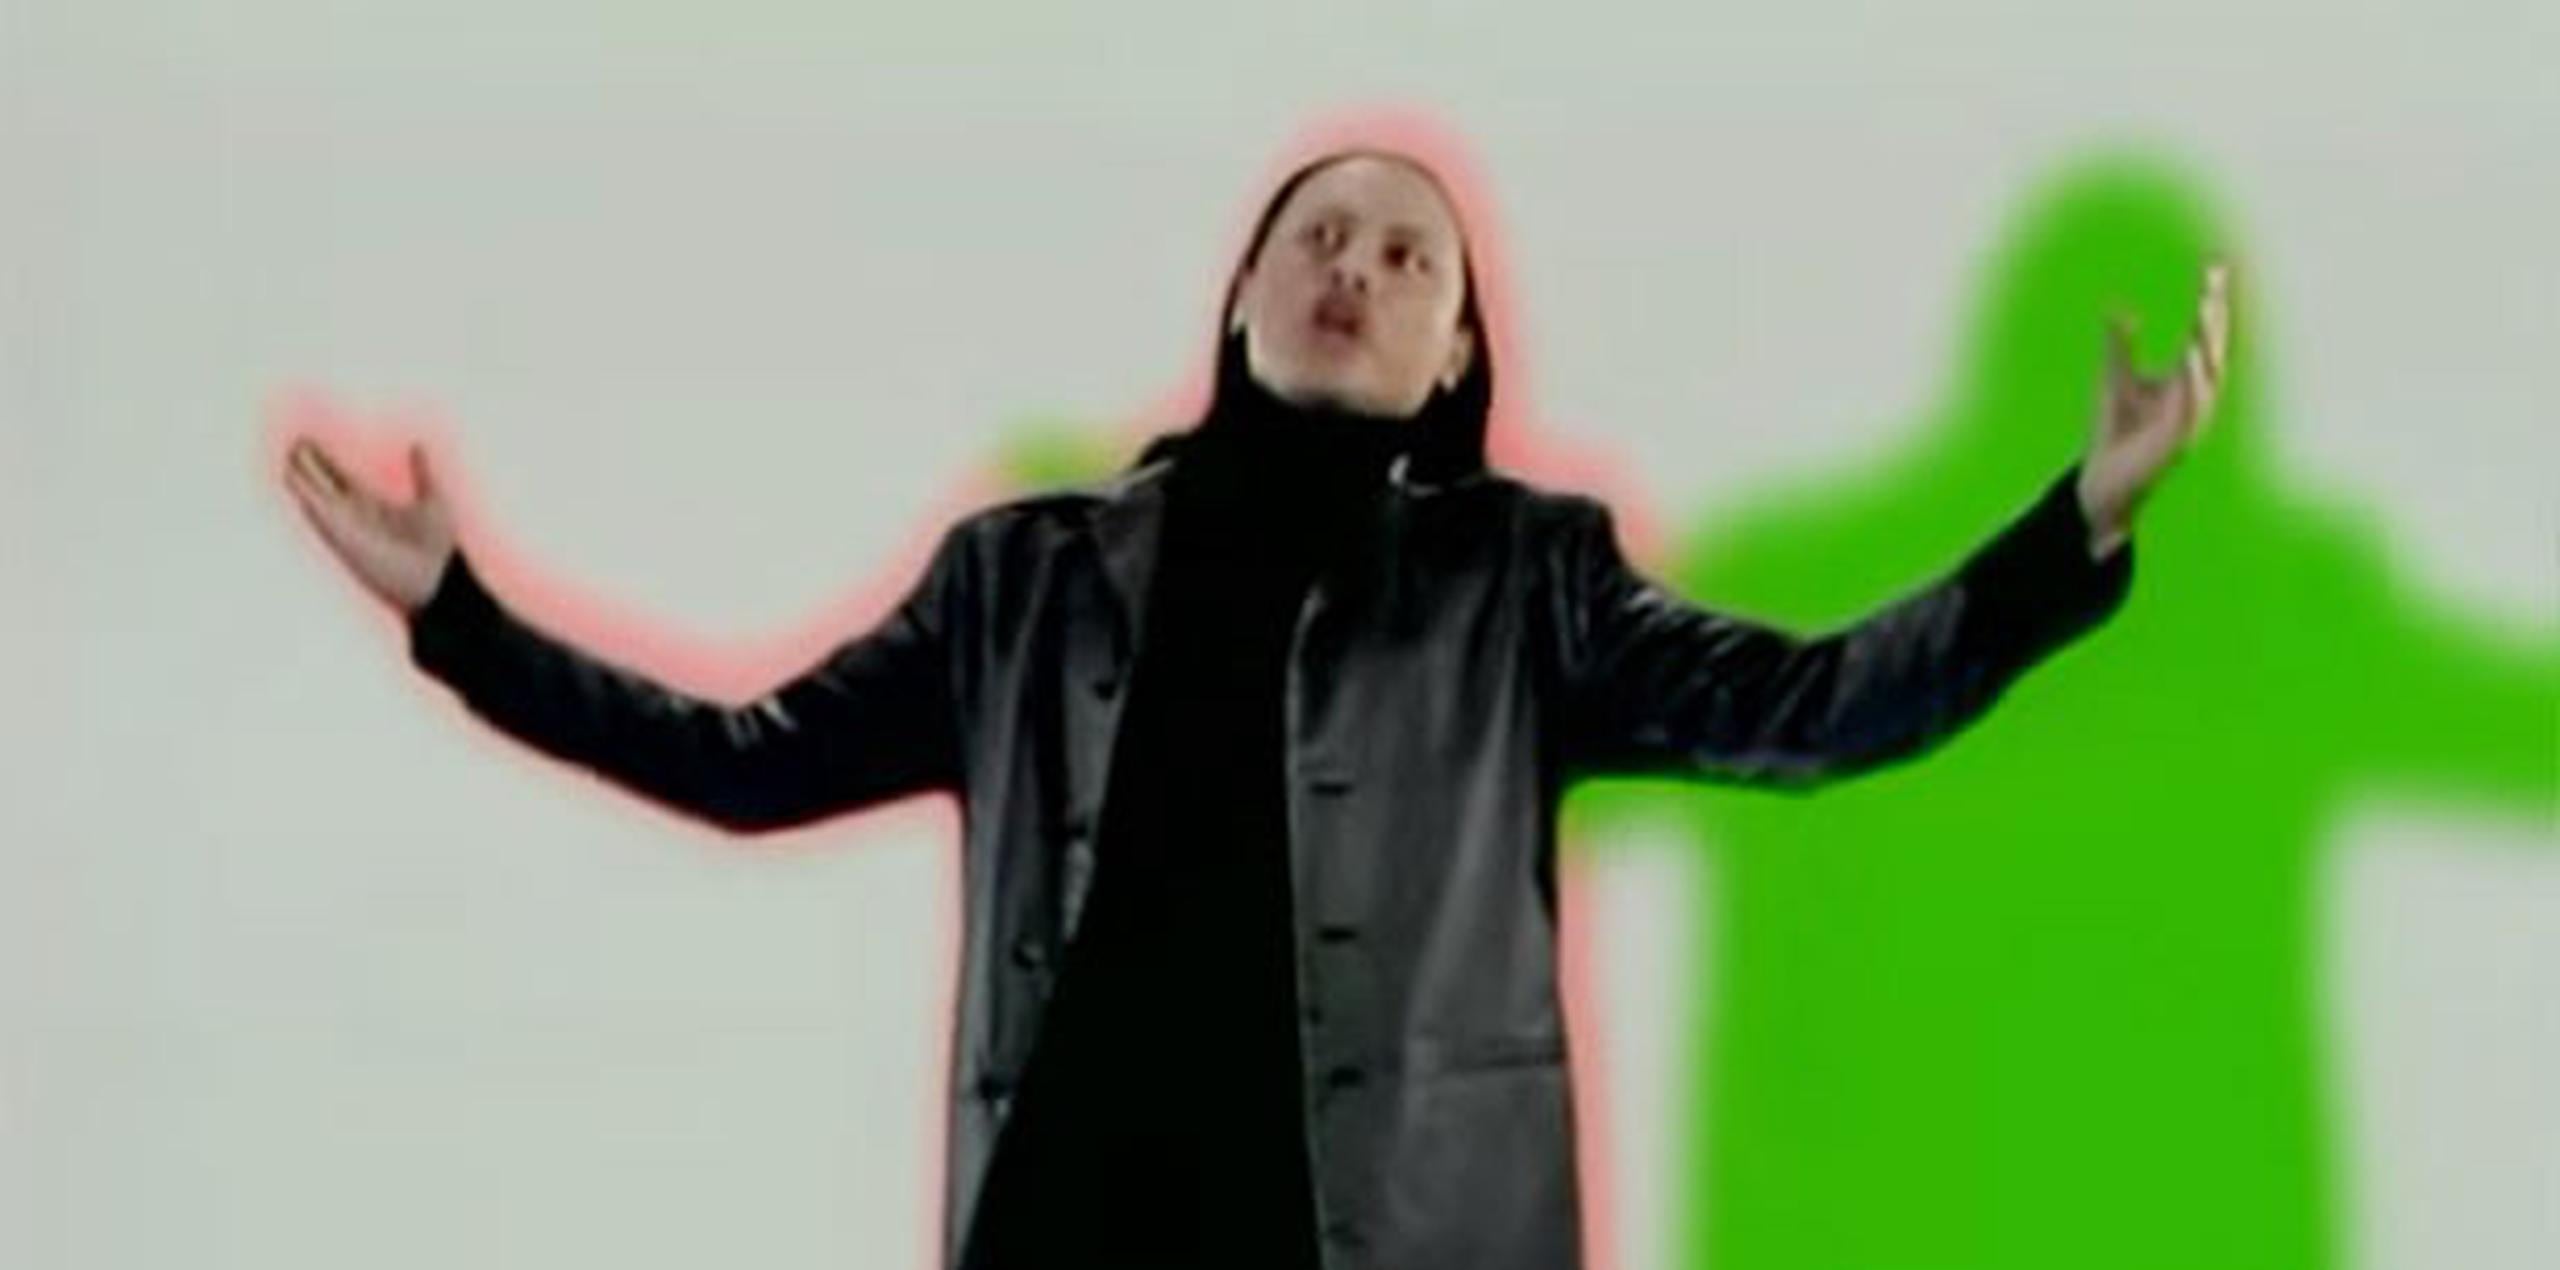 Crespo describe el vídeo de la canción como "low budged". (Youtube)